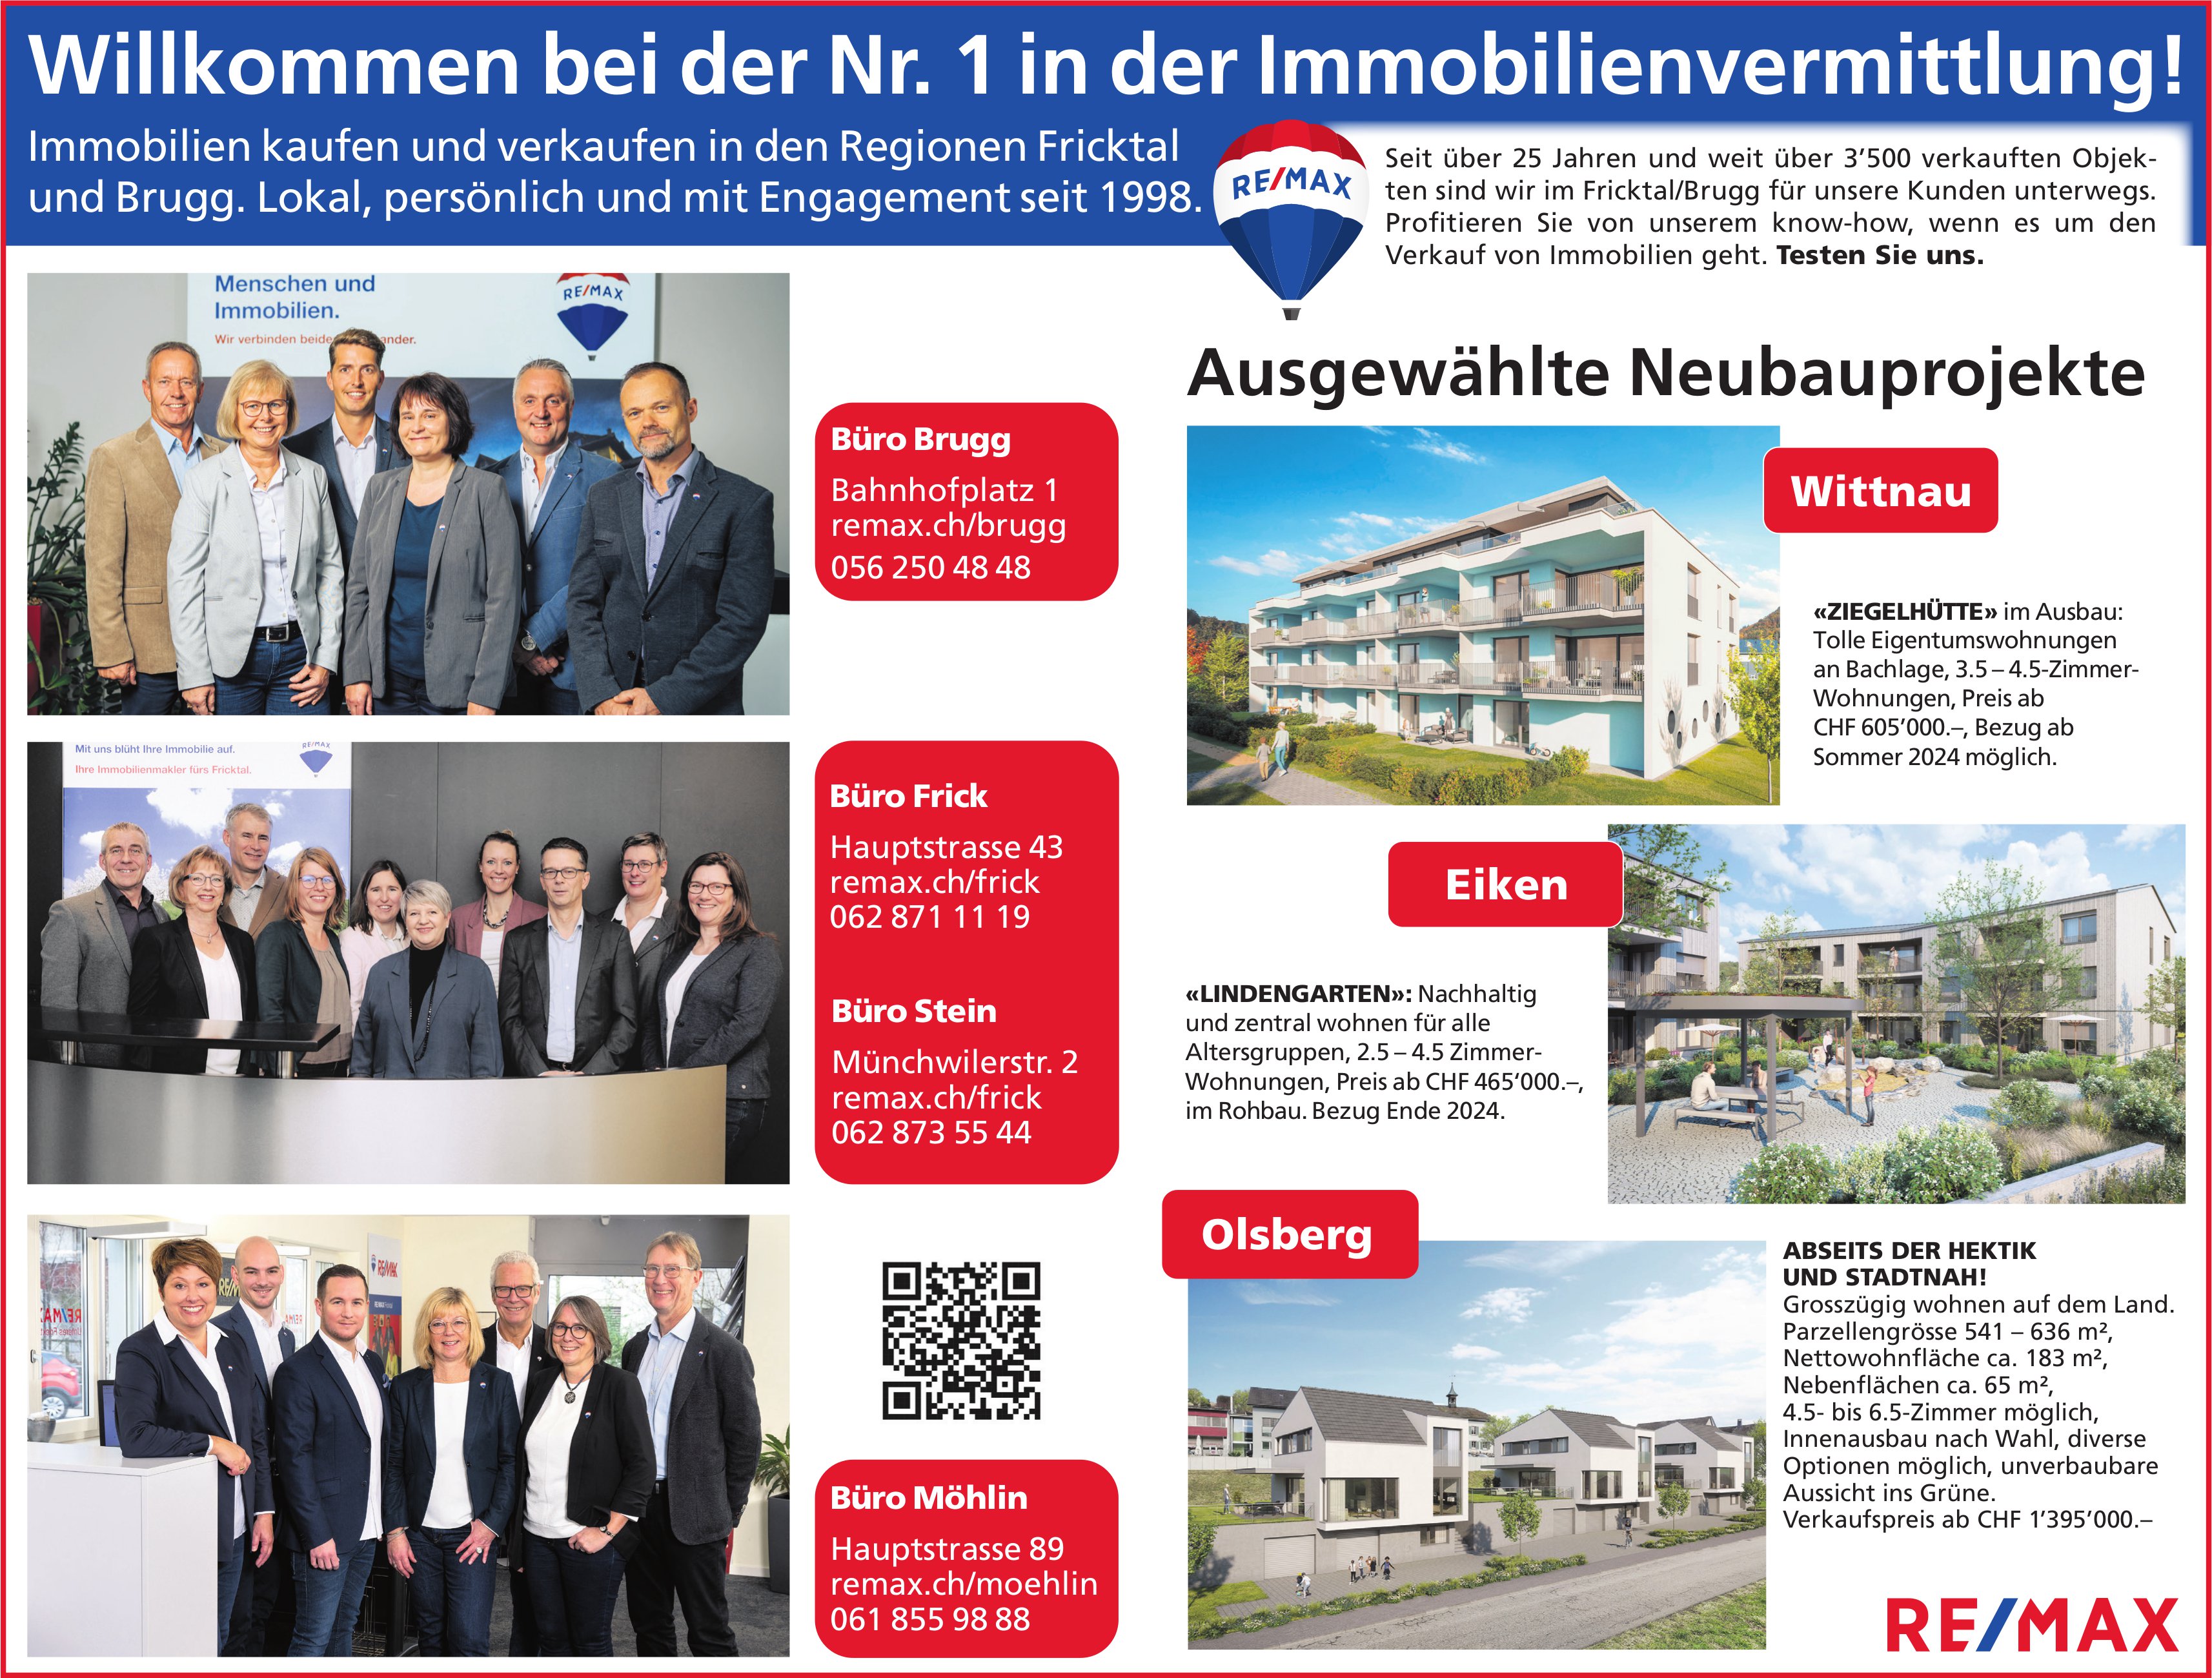 Remax Immobilien, Brugg - Willkommen bei der Nr. 1 in der Immobilienvermittlung!